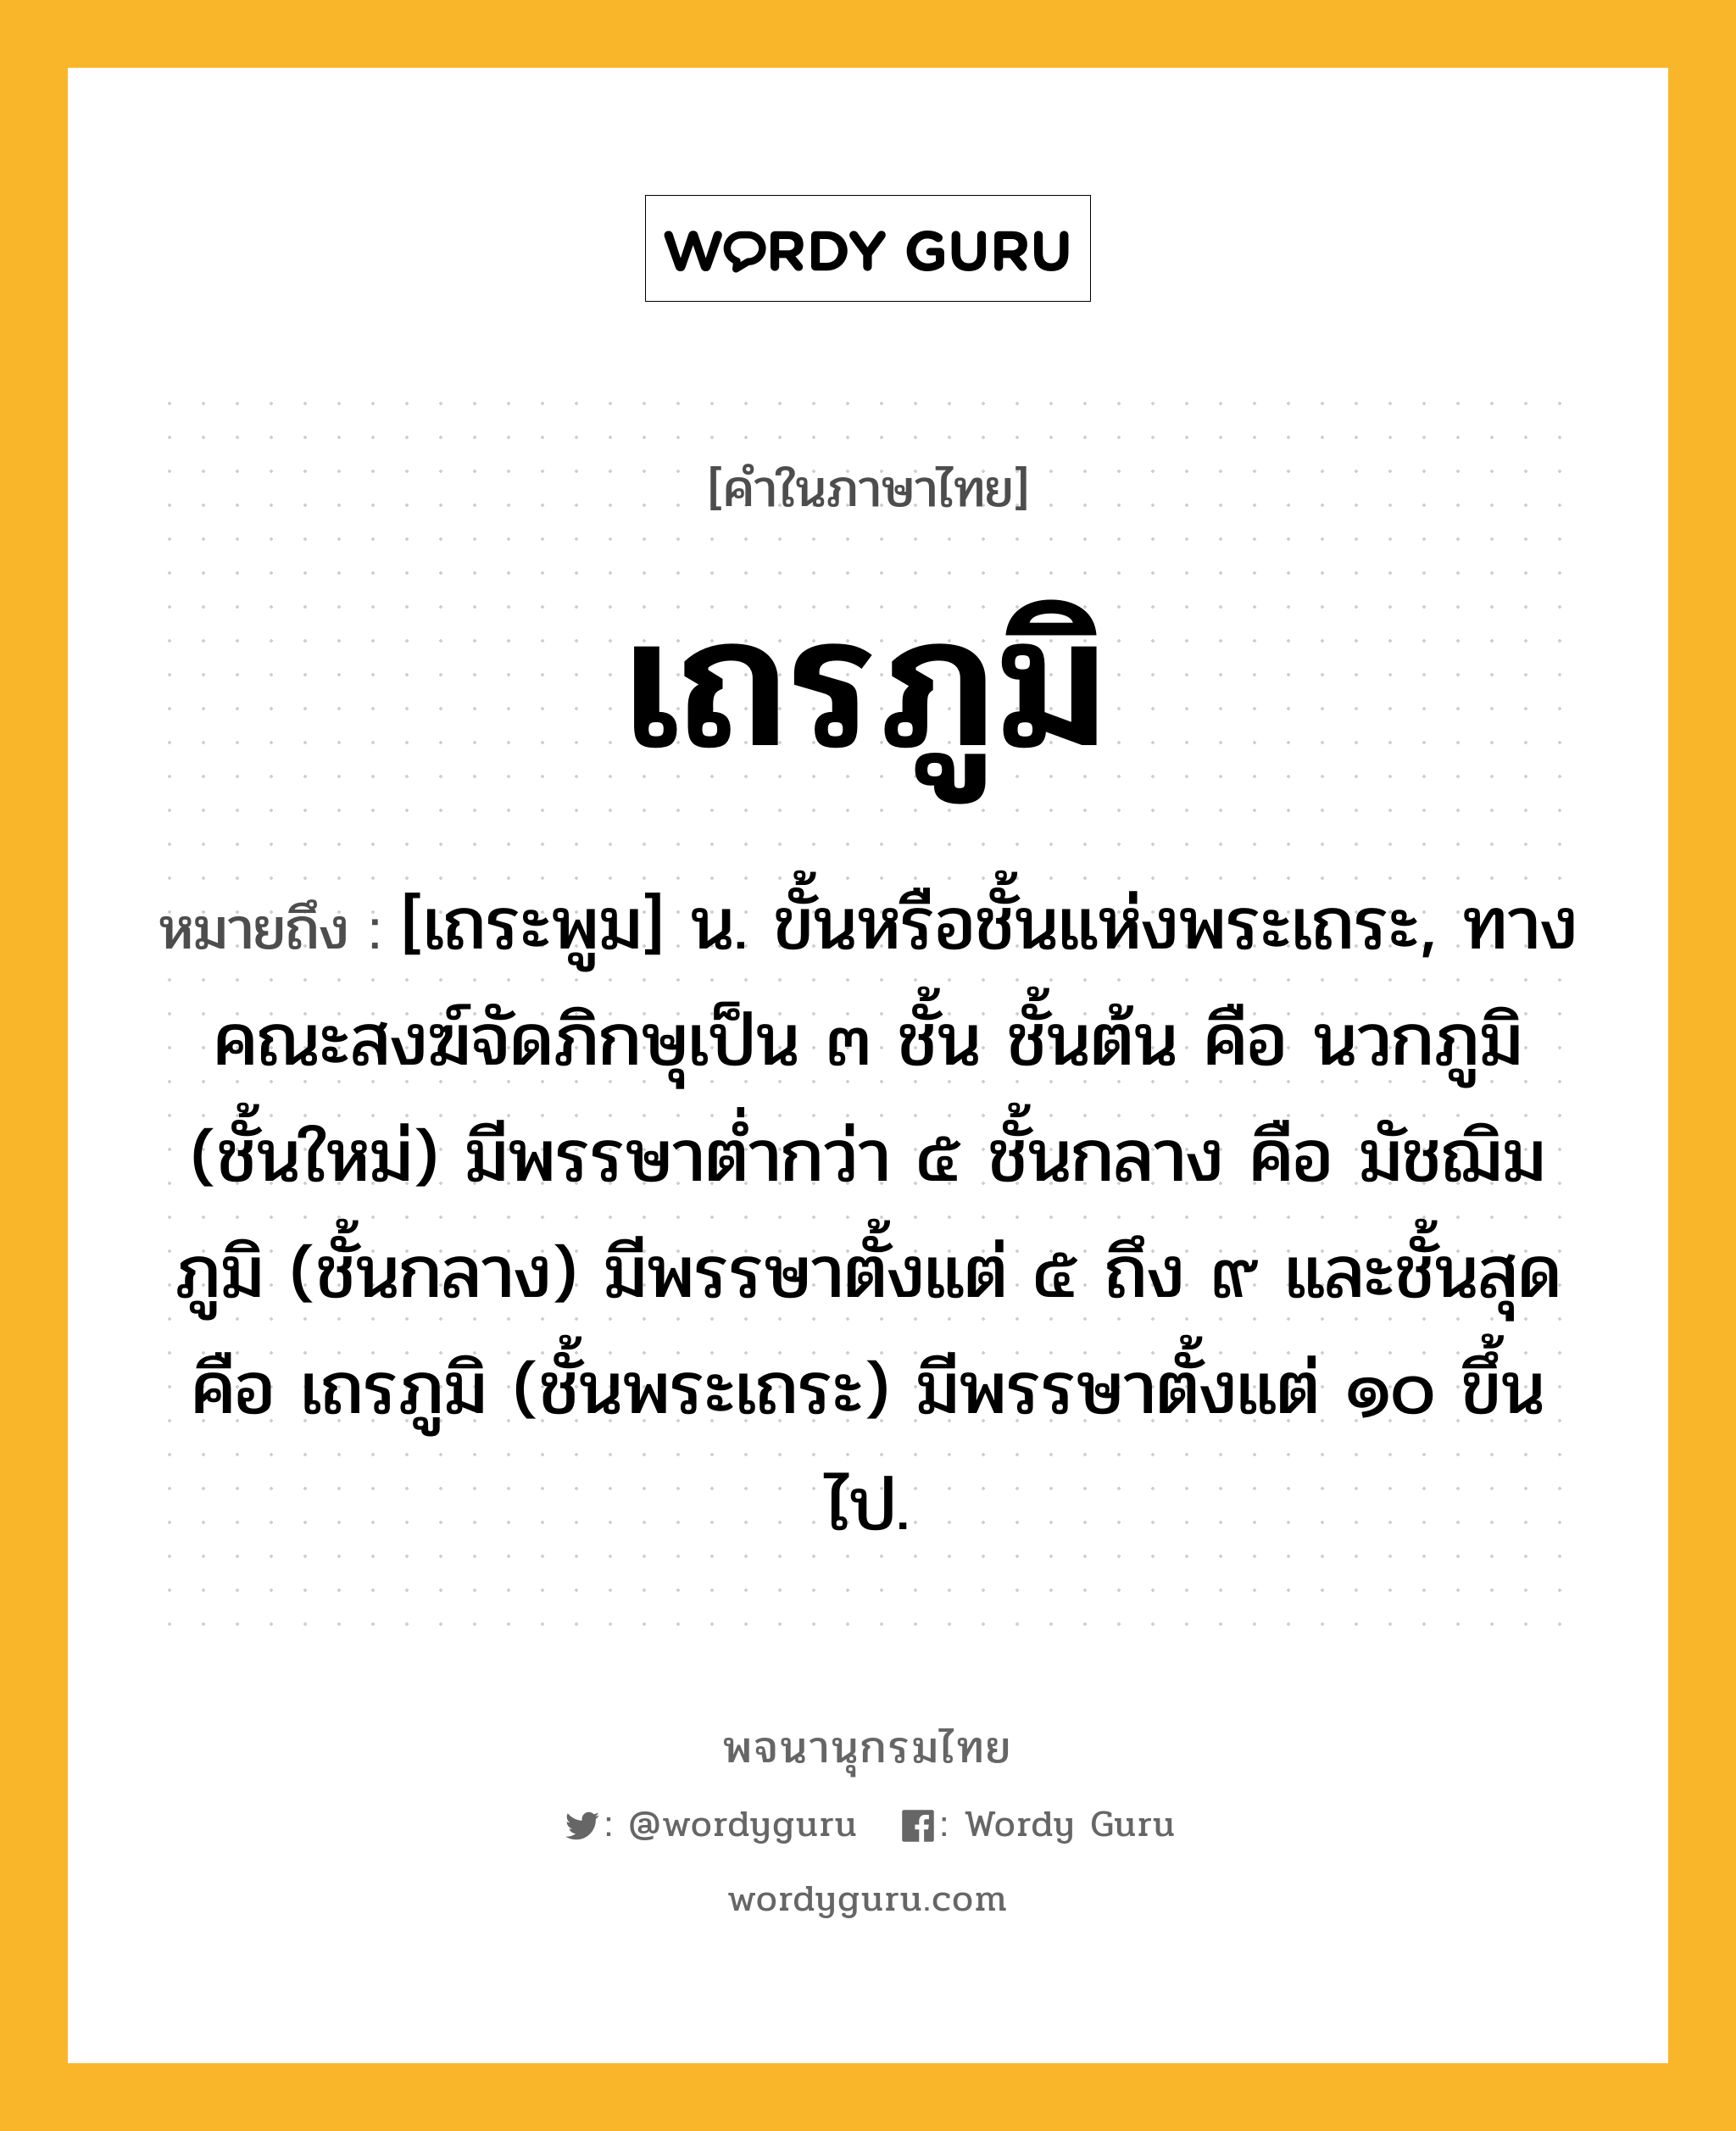 เถรภูมิ ความหมาย หมายถึงอะไร?, คำในภาษาไทย เถรภูมิ หมายถึง [เถระพูม] น. ขั้นหรือชั้นแห่งพระเถระ, ทางคณะสงฆ์จัดภิกษุเป็น ๓ ชั้น ชั้นต้น คือ นวกภูมิ (ชั้นใหม่) มีพรรษาตํ่ากว่า ๕ ชั้นกลาง คือ มัชฌิมภูมิ (ชั้นกลาง) มีพรรษาตั้งแต่ ๕ ถึง ๙ และชั้นสุดคือ เถรภูมิ (ชั้นพระเถระ) มีพรรษาตั้งแต่ ๑๐ ขึ้นไป.